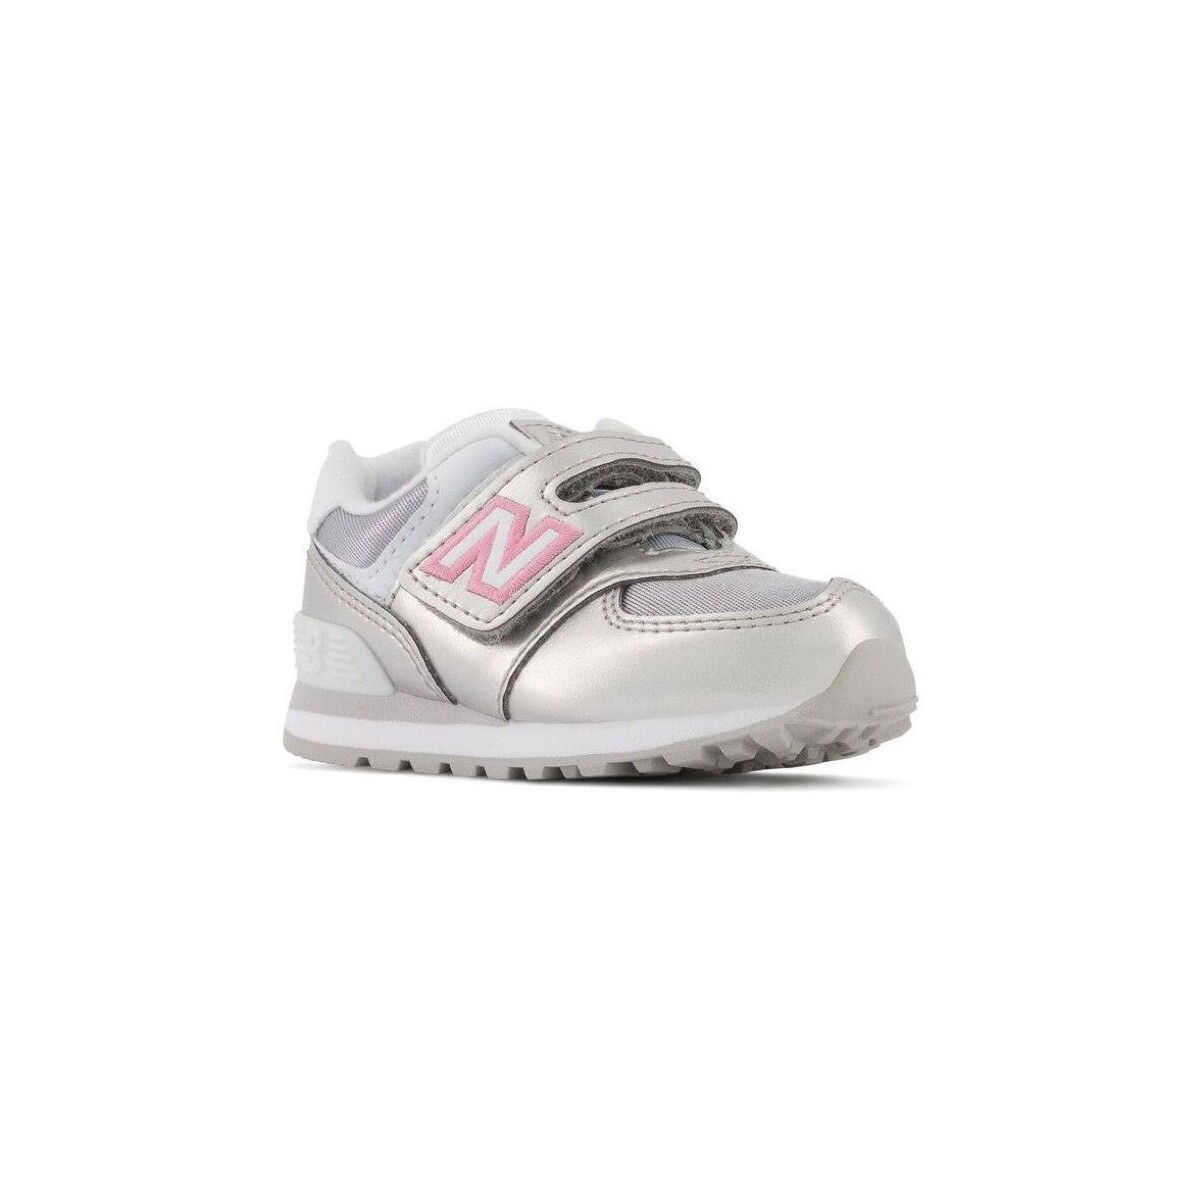 Παπούτσια Παιδί Sneakers New Balance Baby IV574LF1 Silver